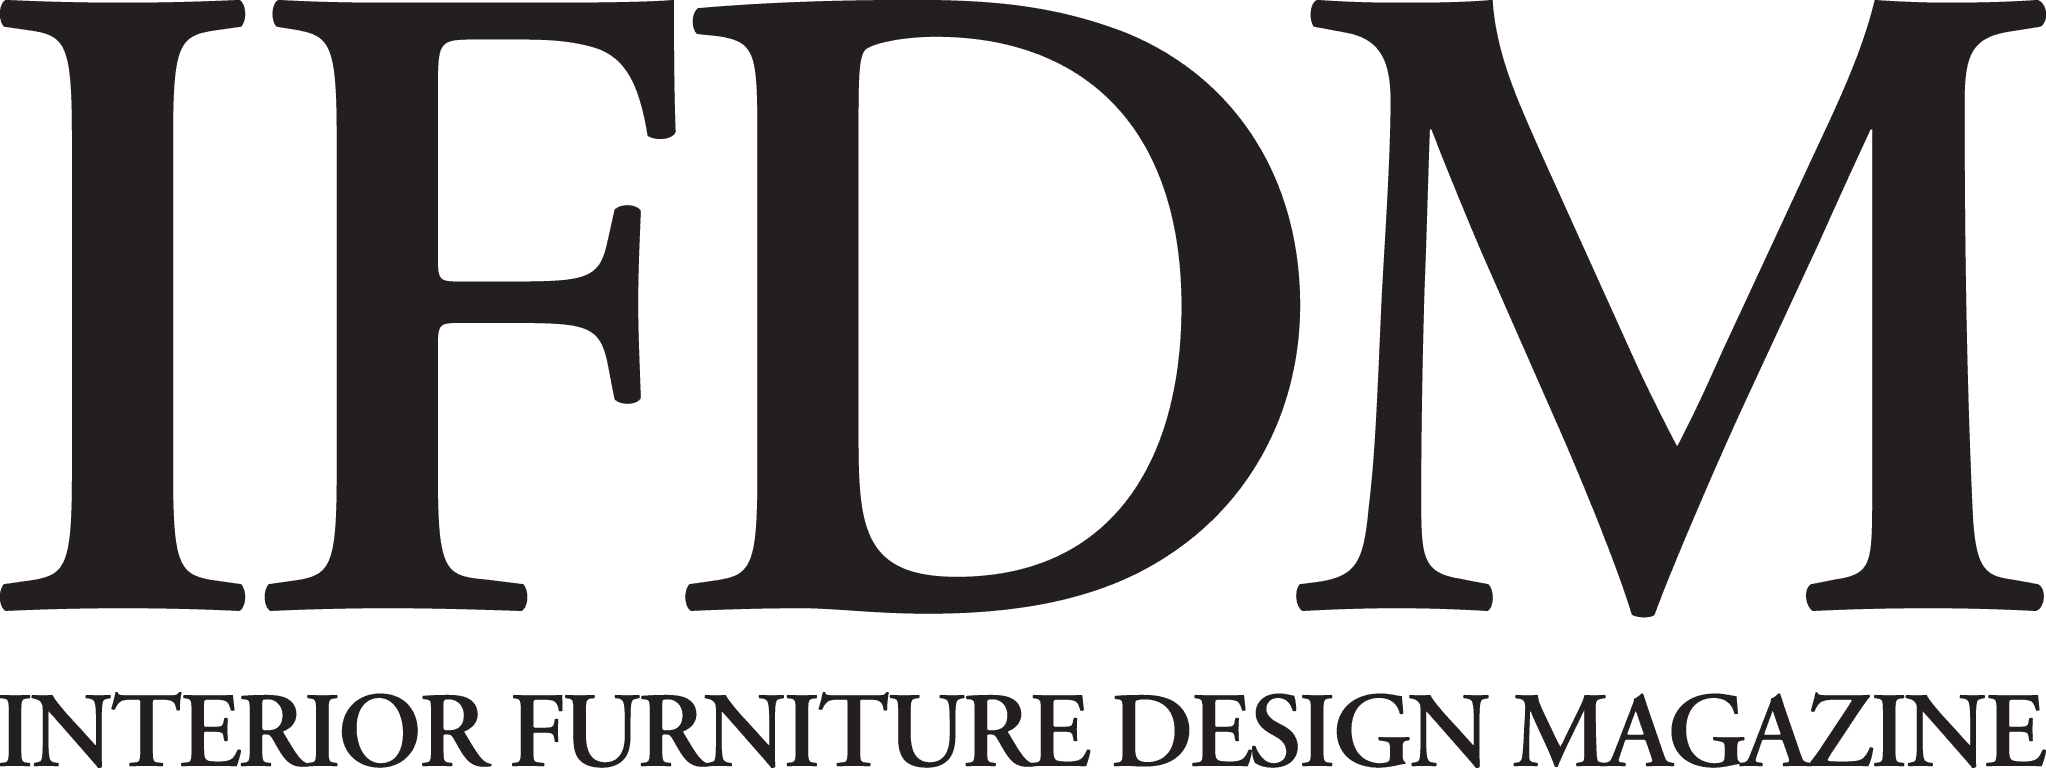 Interior Furniture Design Magazine (IFDM)